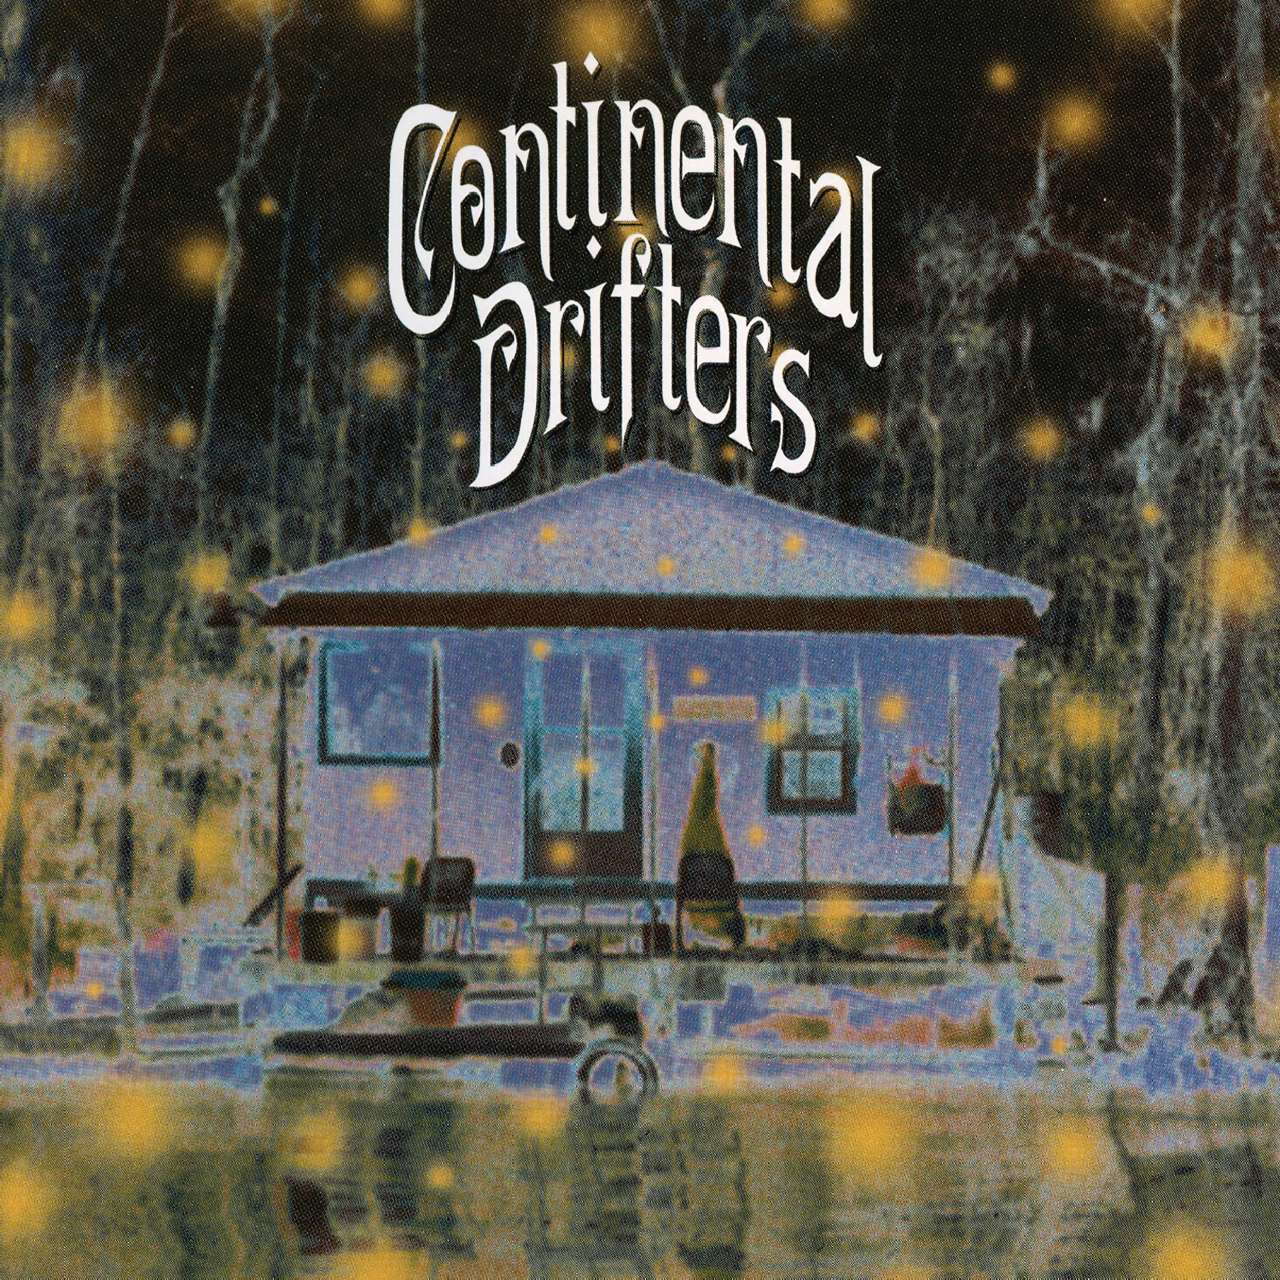 Continental Drifters – Continental Drifters cover album